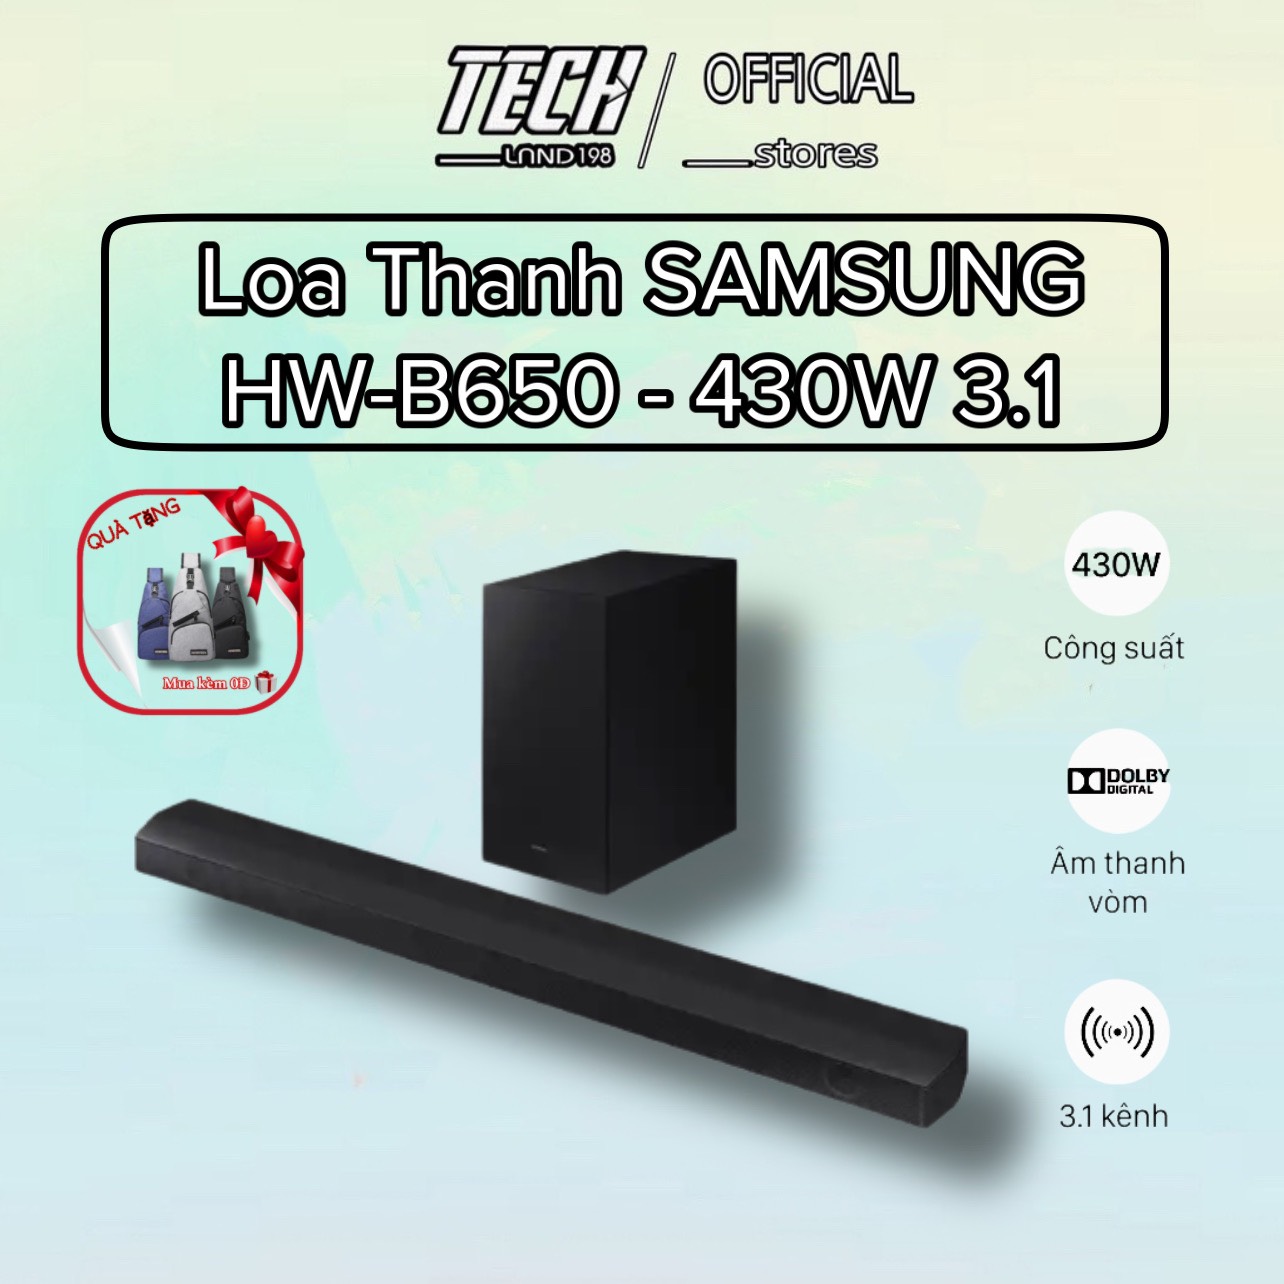 [FREE SHIP TOÀN QUỐC] Loa thanh Samsung HW-B650/XV công suất 430w 3.1 kênh - Hàng chính hãng - Bảo hành 12 tháng